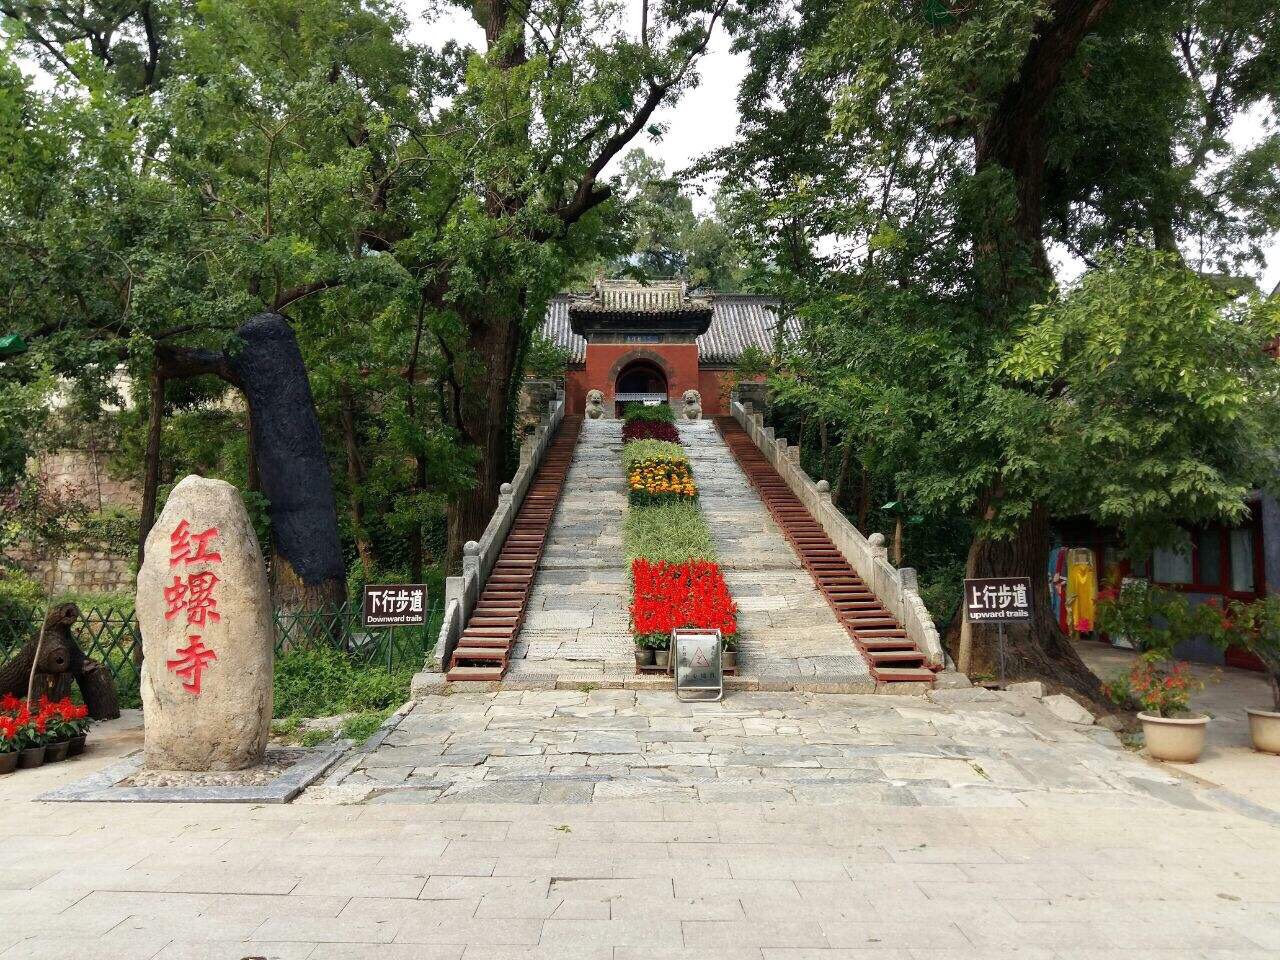 【携程攻略】北京红螺寺景点,红螺寺在北京怀柔区，离市区还是比较远的，适合自驾车出游，报一个团…